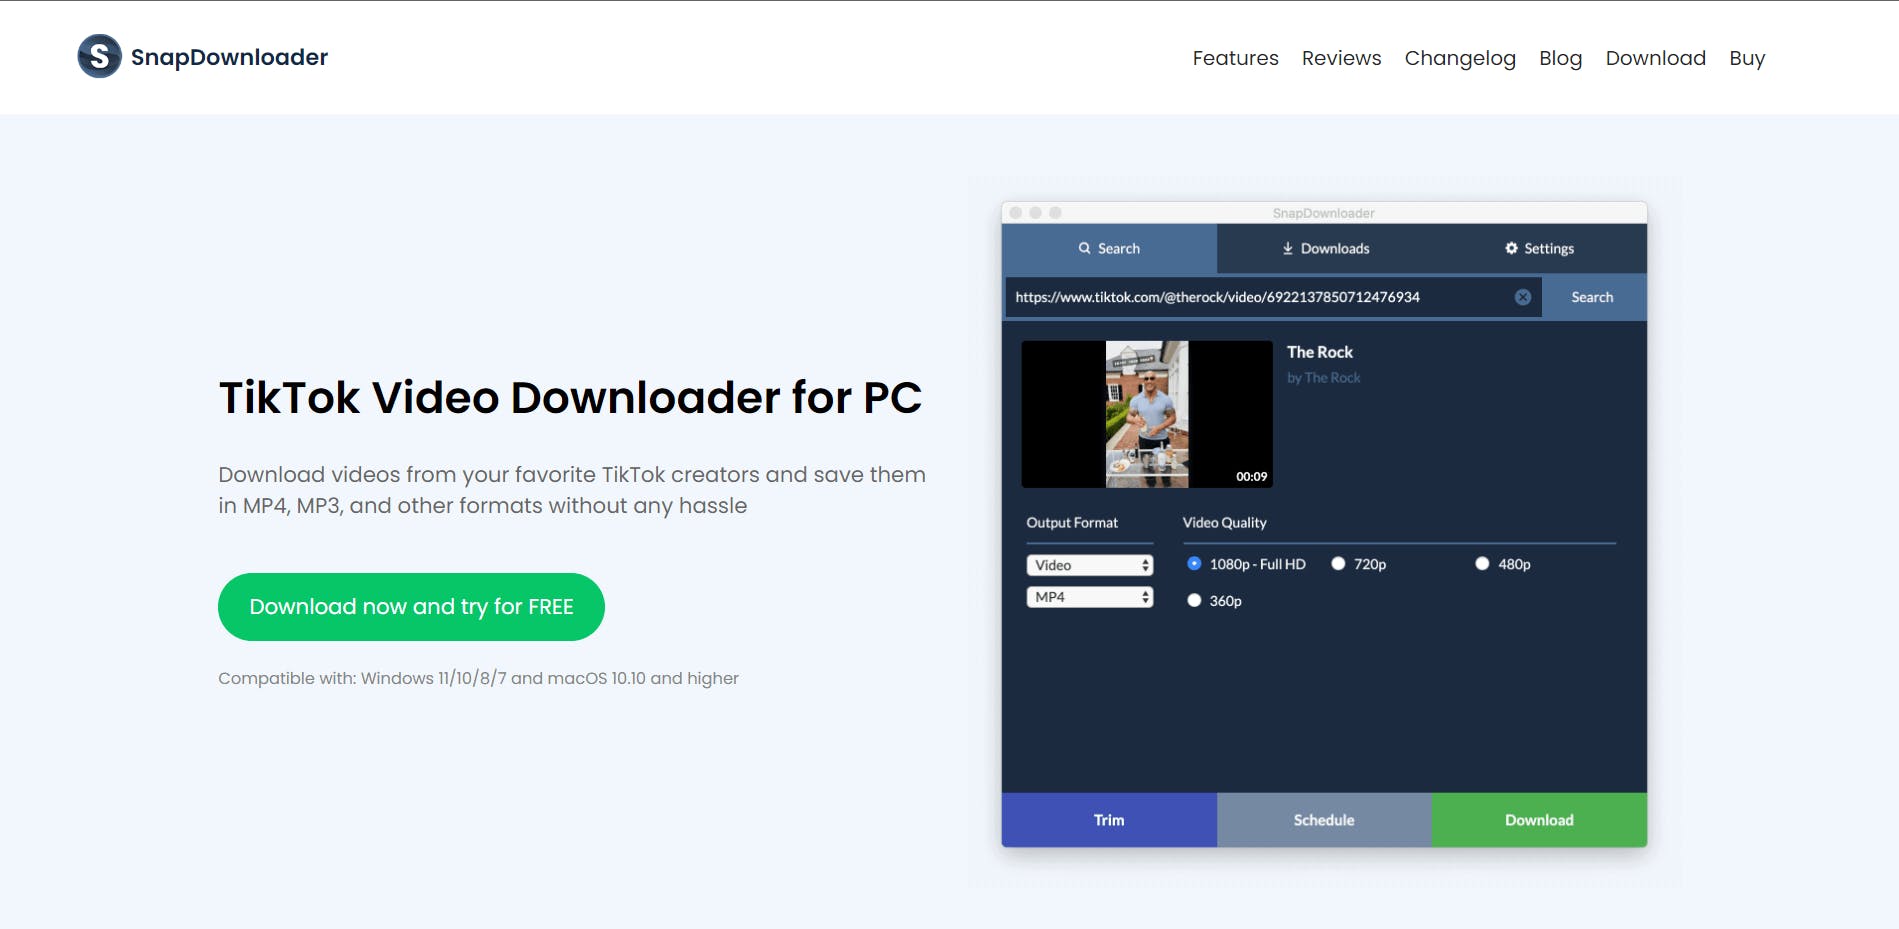 tiktok video downloader by snapdownloader